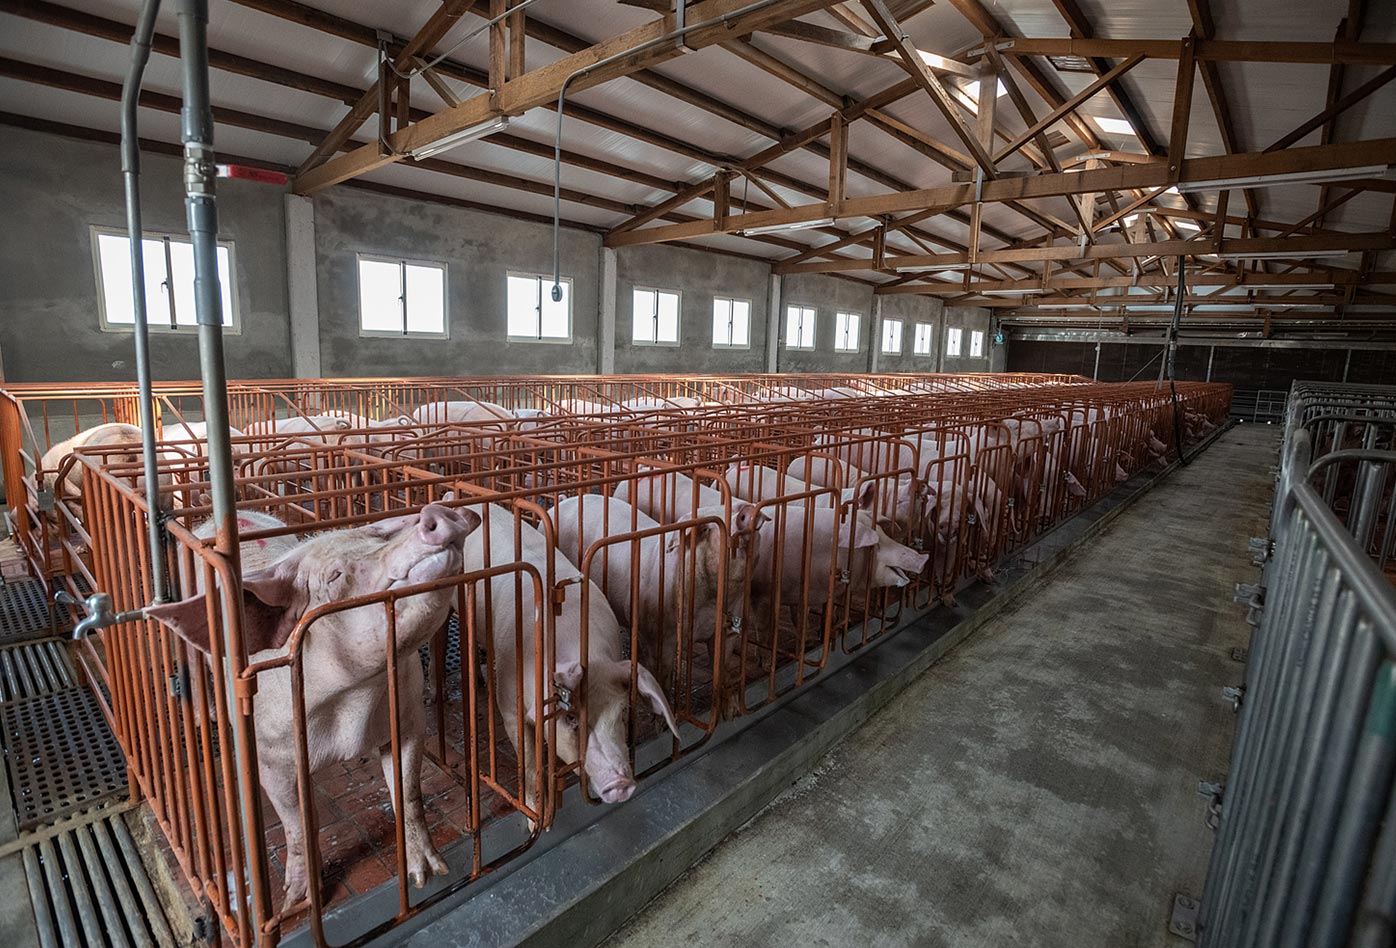 Cerdas y cerdos en una granja industrial recién construida.